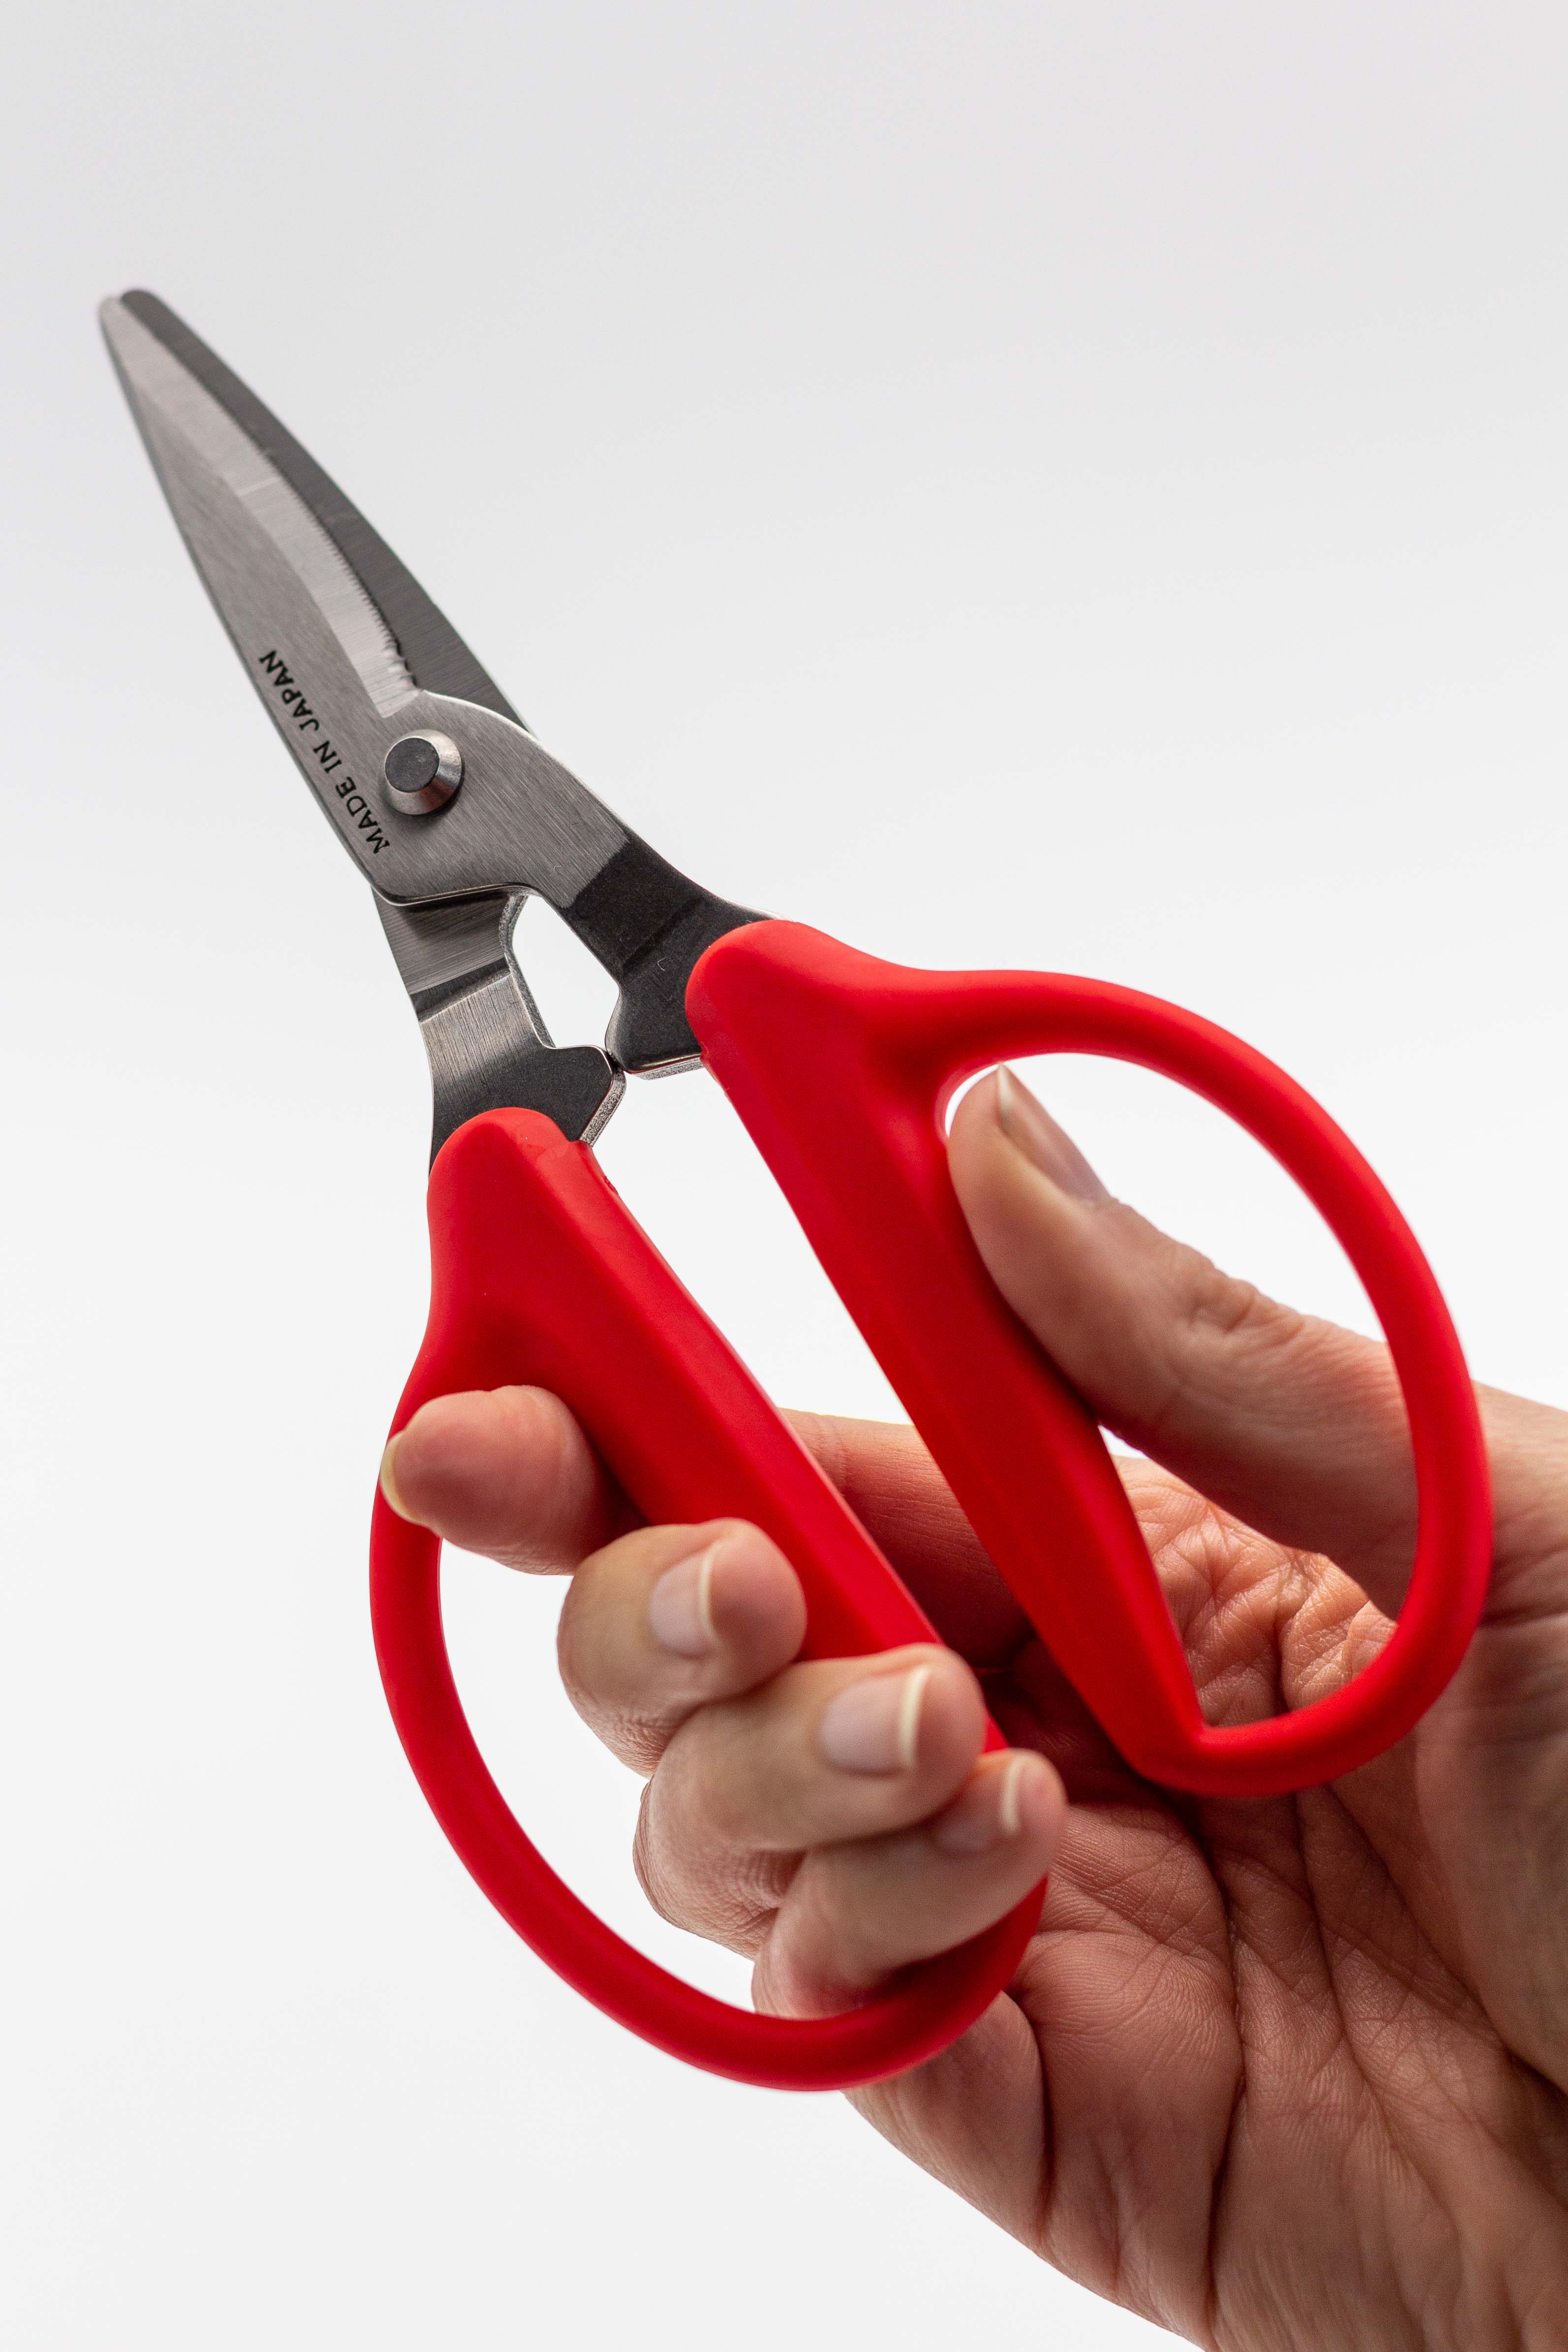 Houseplant scissors